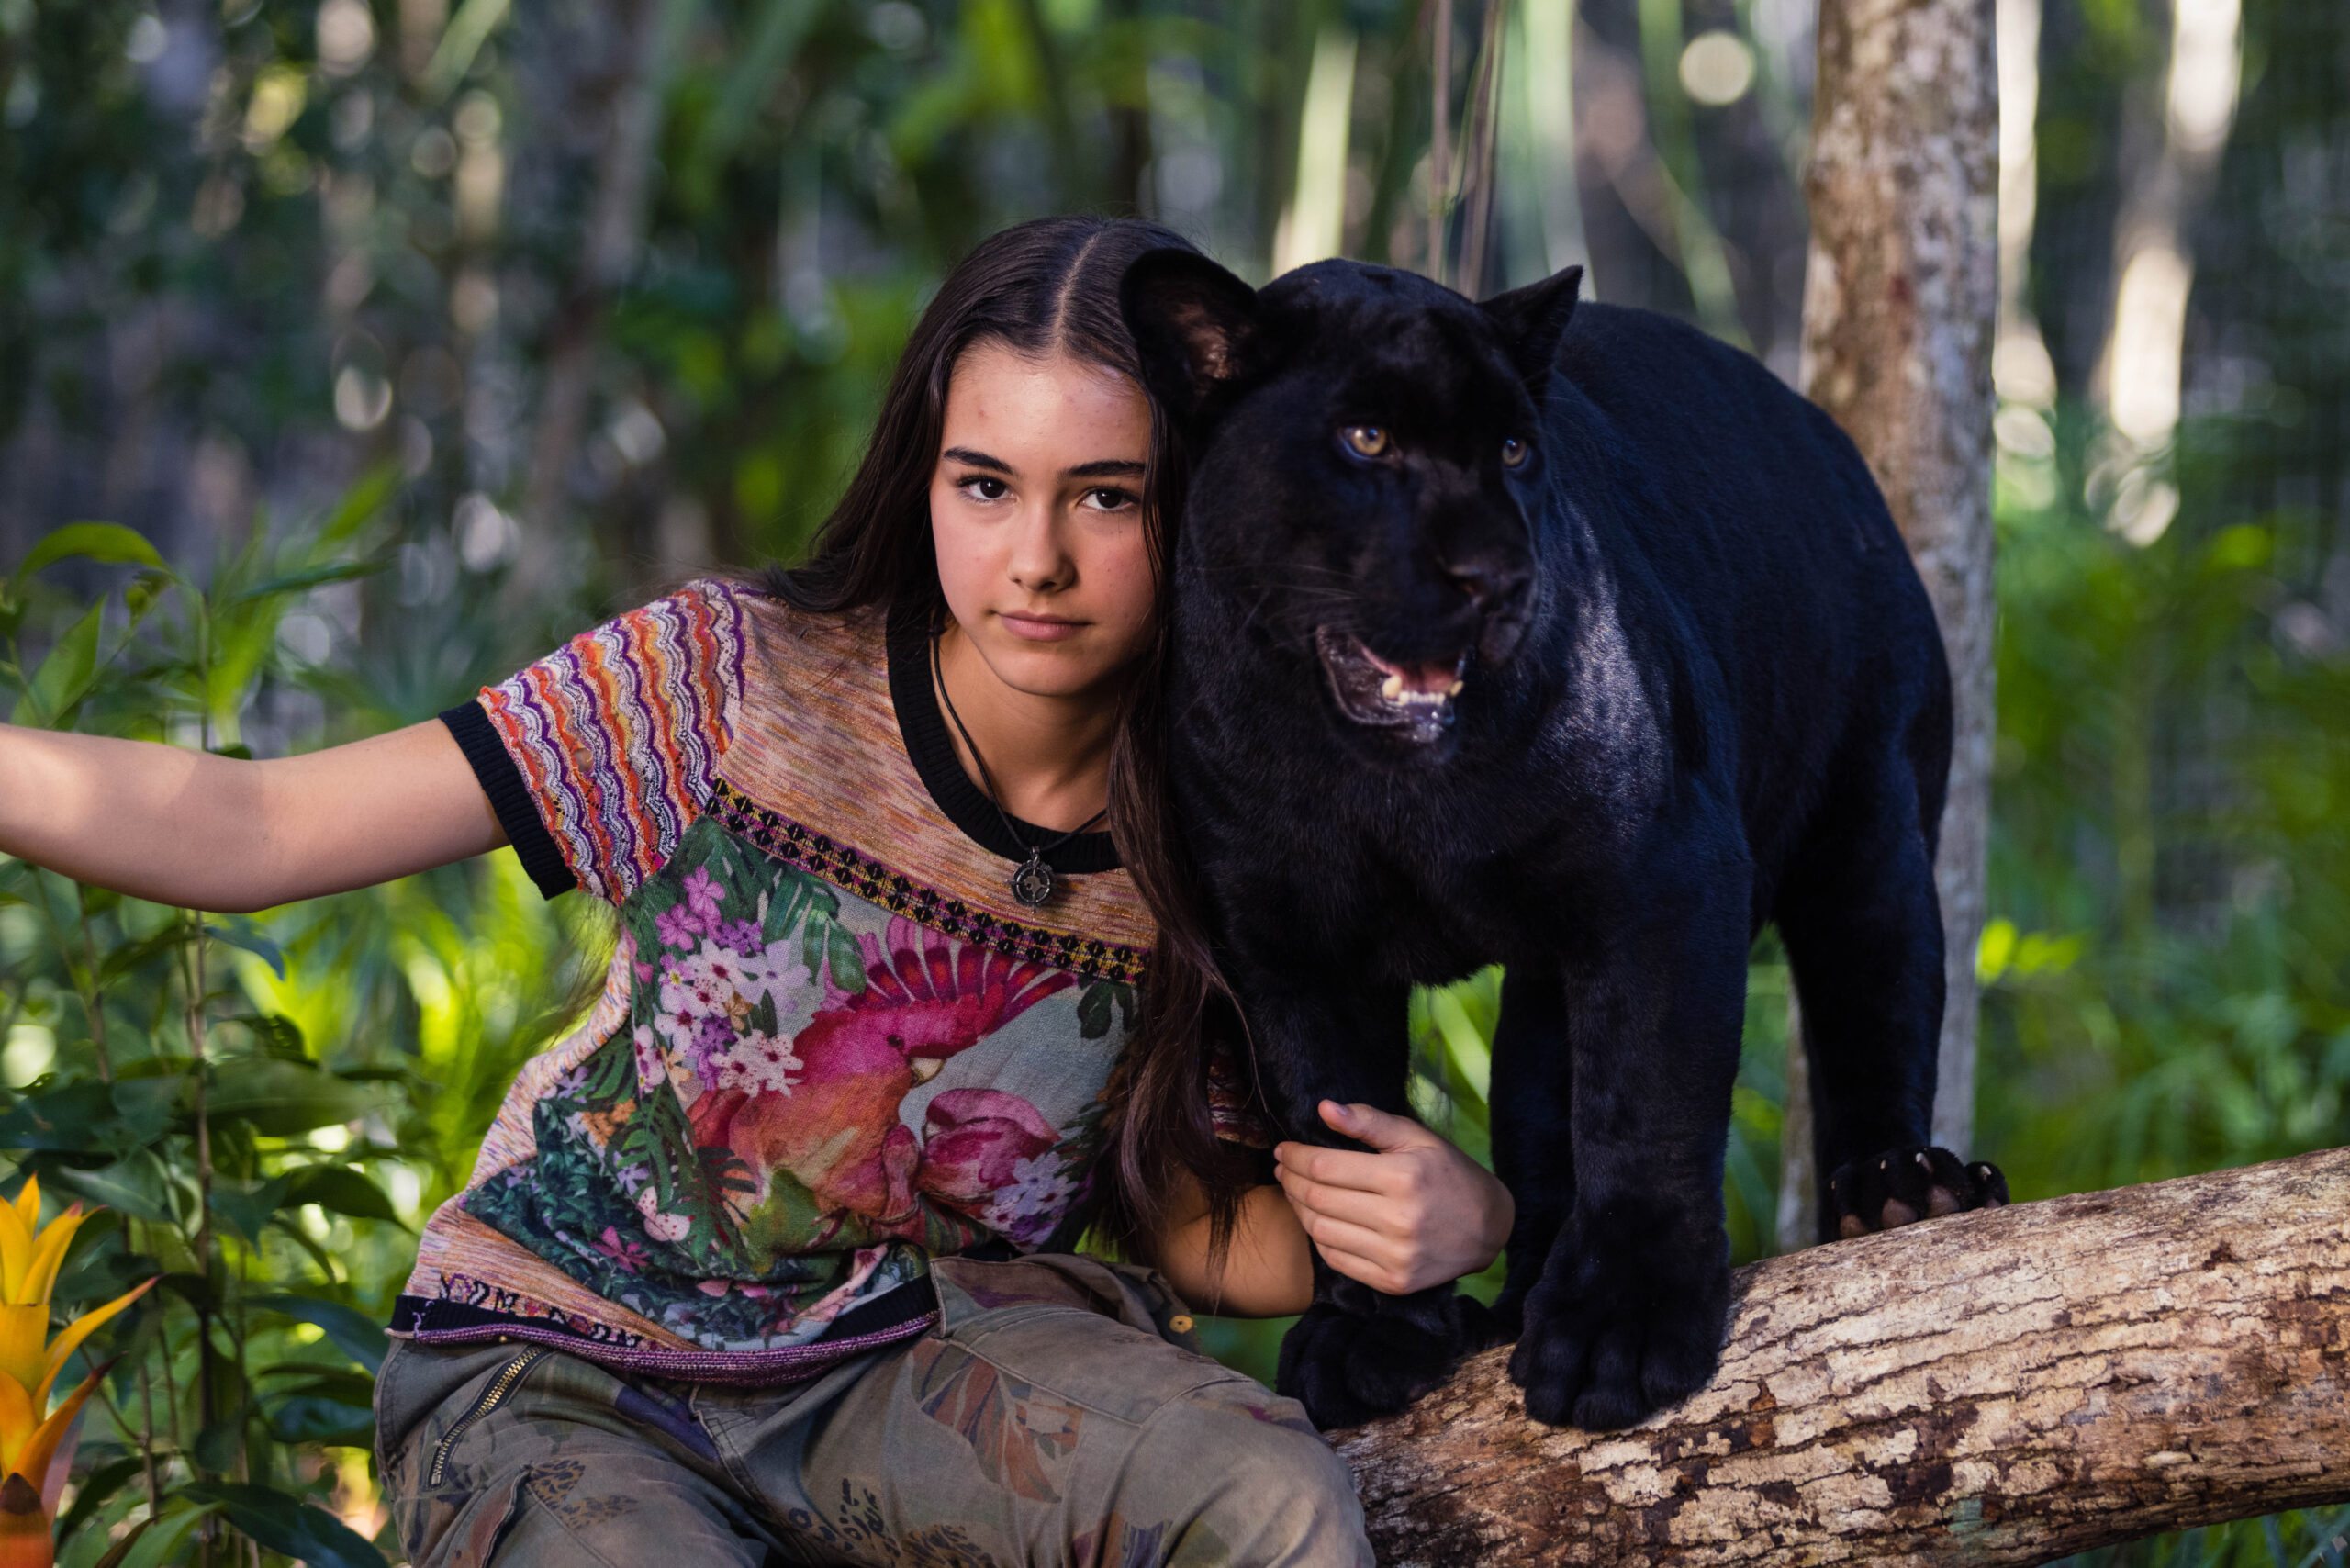 Emma i czarny jaguar. Wygraj dwuosobowe zaproszenie do kina!